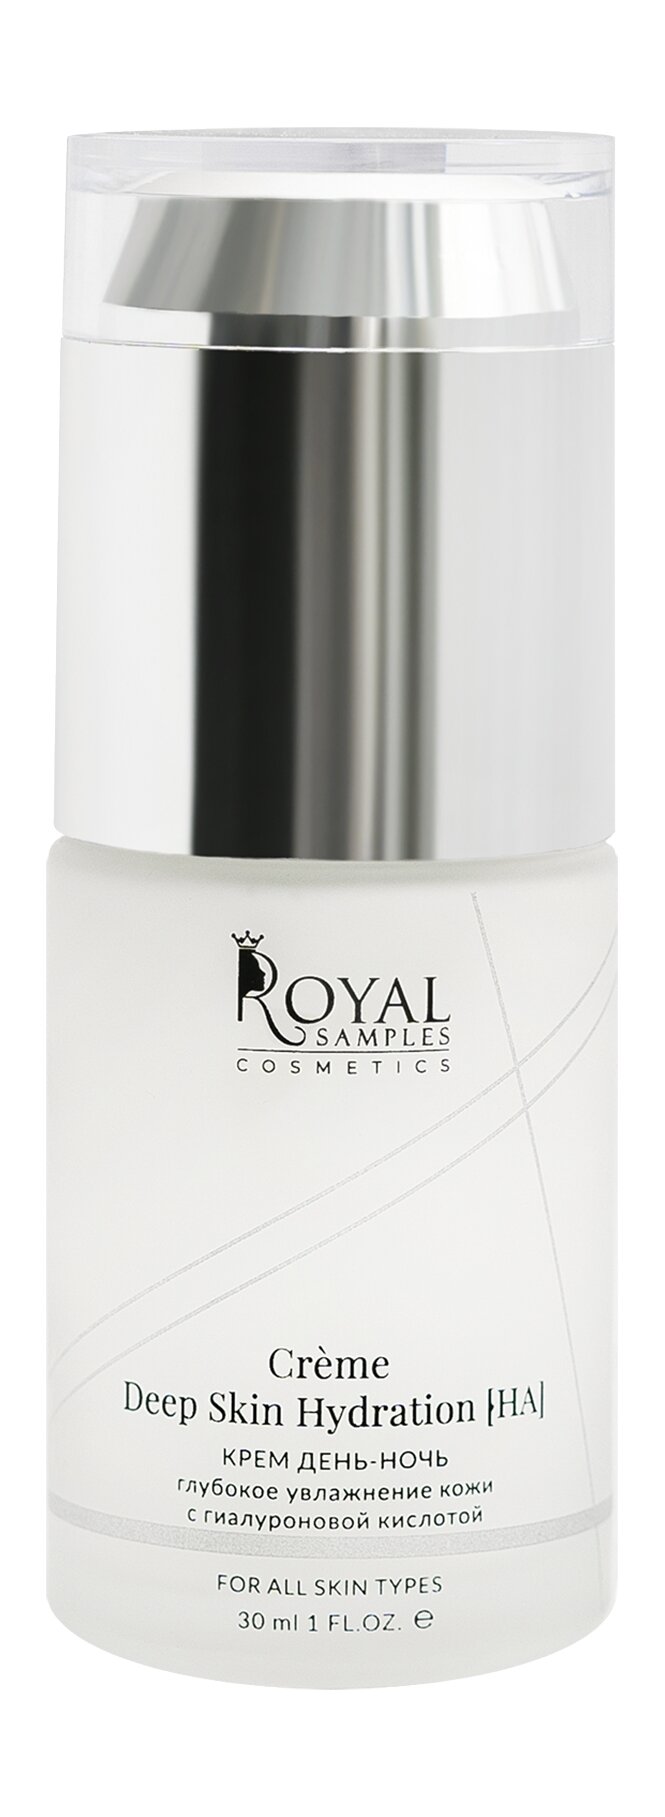 ROYAL SAMPLES Крем день-ночь Royal Samples глубокое увлажнение кожи с гиалуроновой кислотой, 30 мл